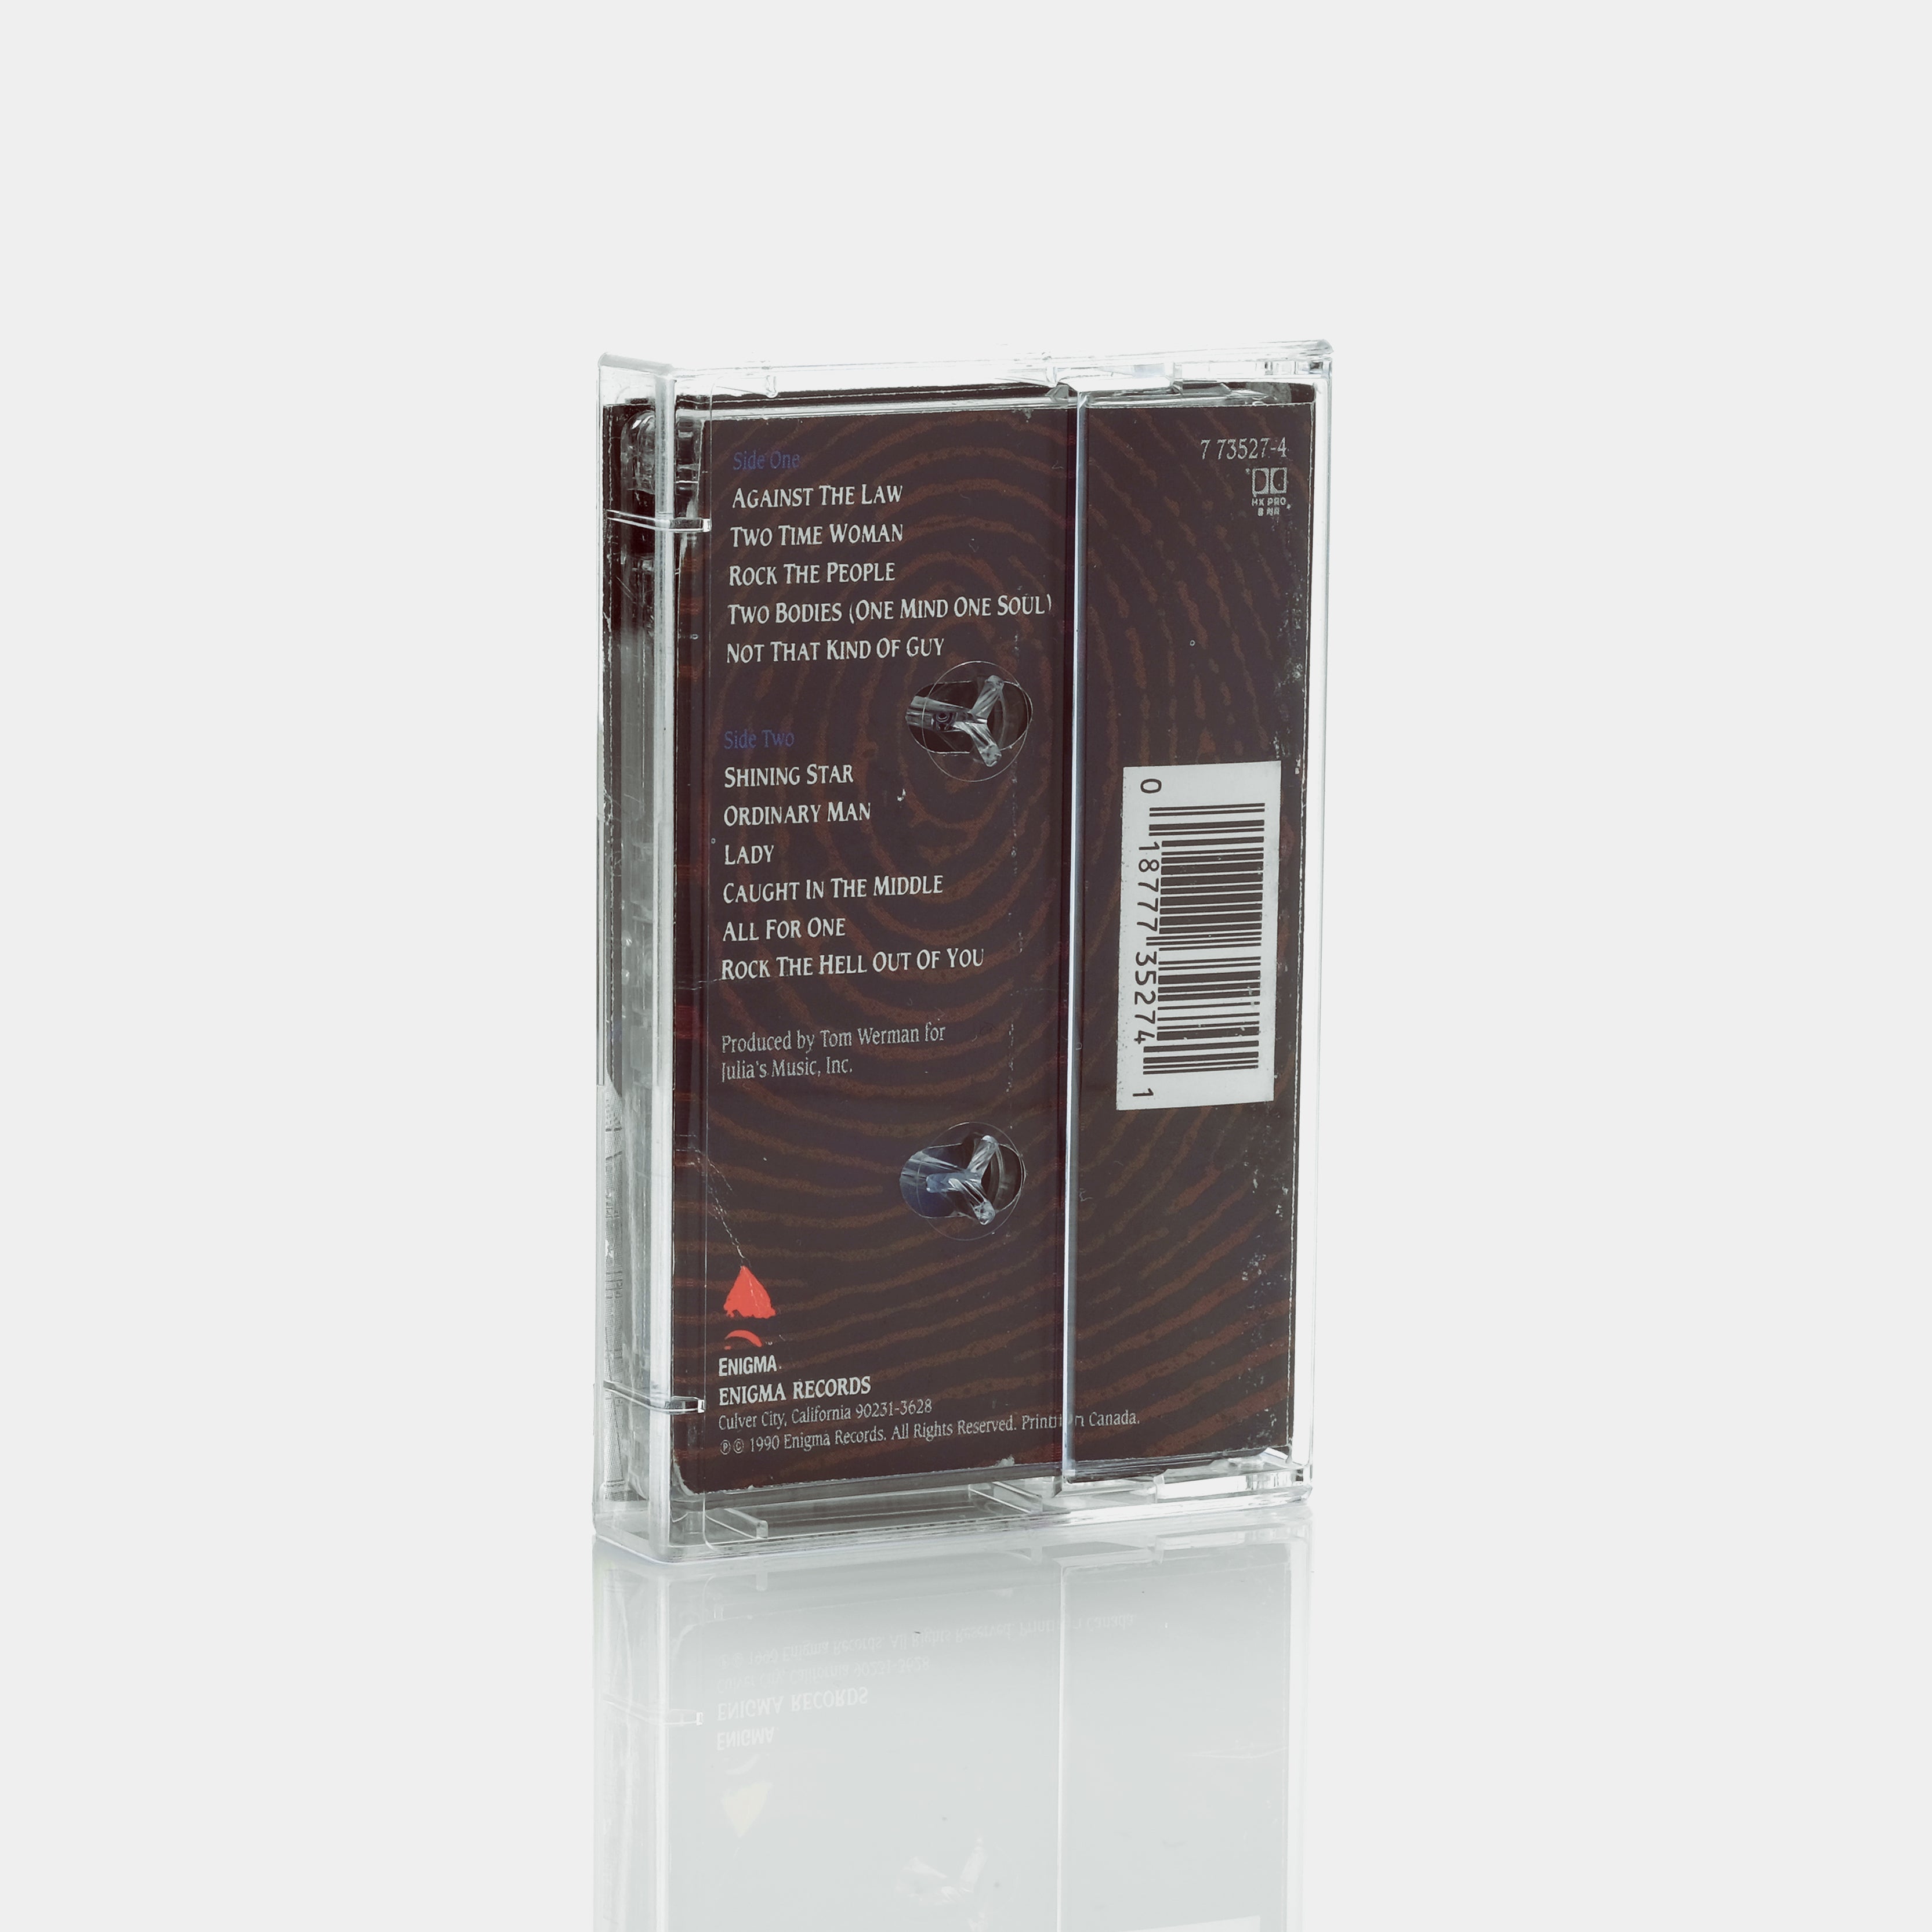 Stryper - Against The Law Cassette Tape